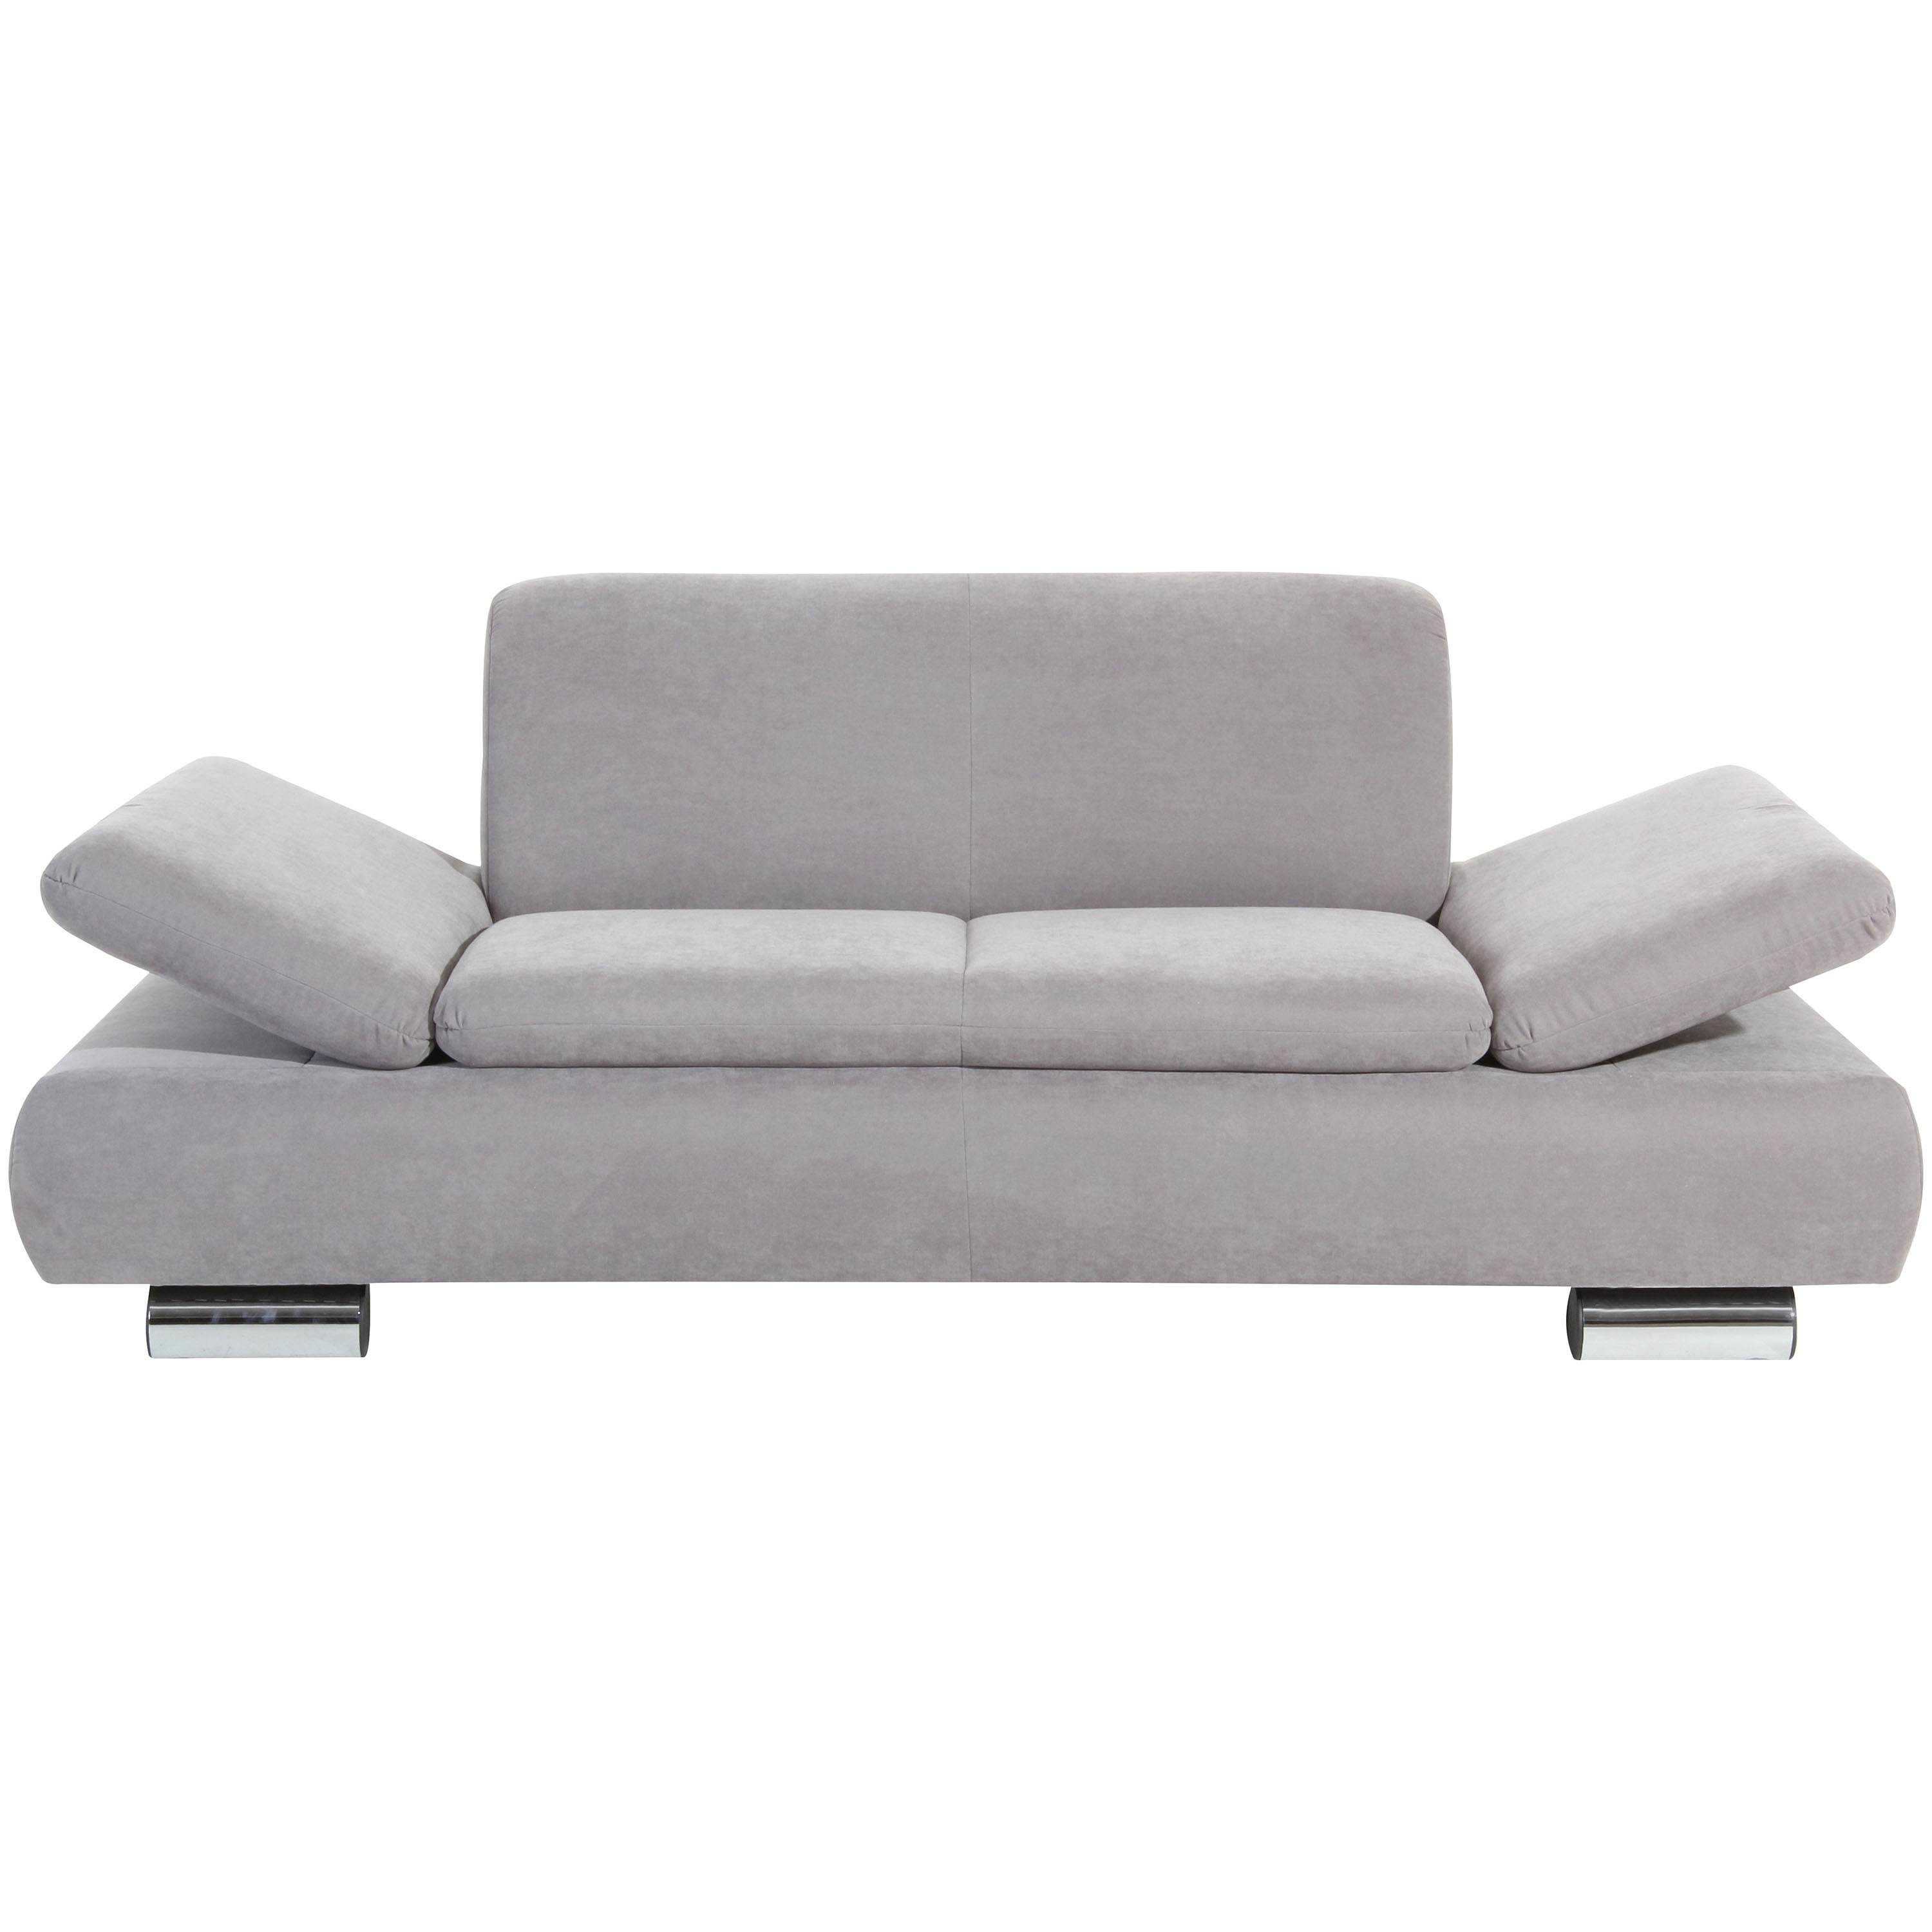 frontansicht von einem silbernen 2-sitzer sofa mit verchromten metallfüssen